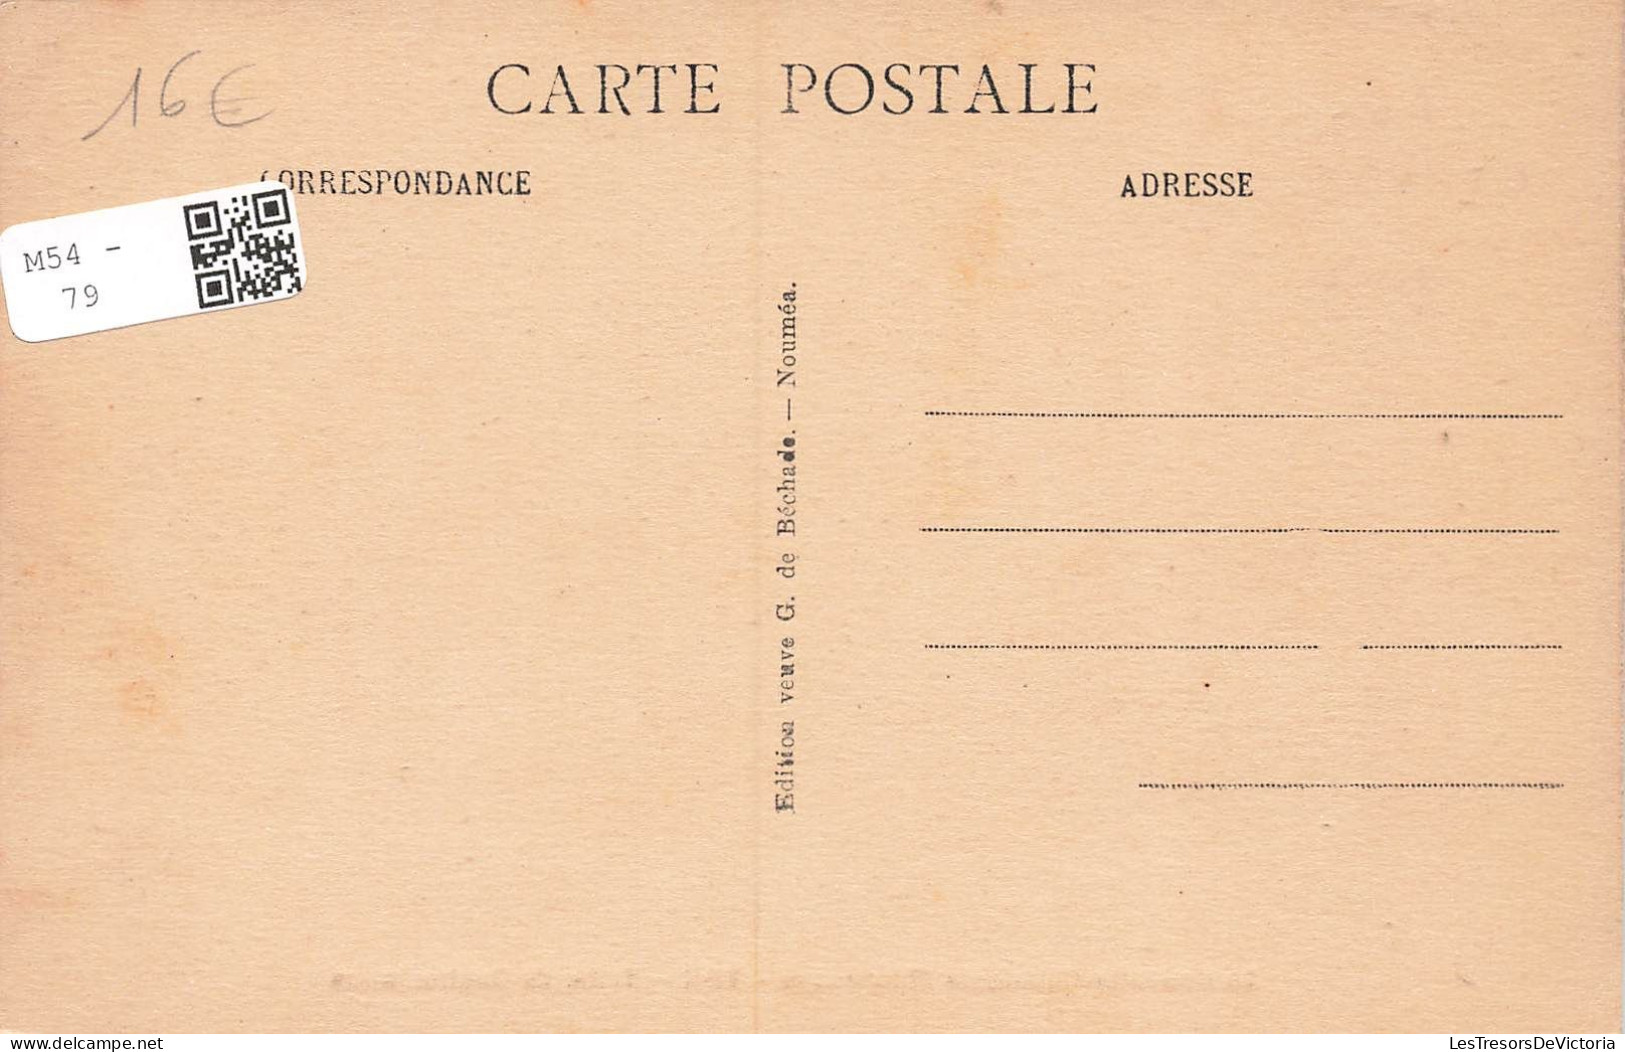 NOUVELLE CALEDONIE - Voh - Tribu De Ouabouionne - Animé - Carte Postale Ancienne - Nouvelle-Calédonie